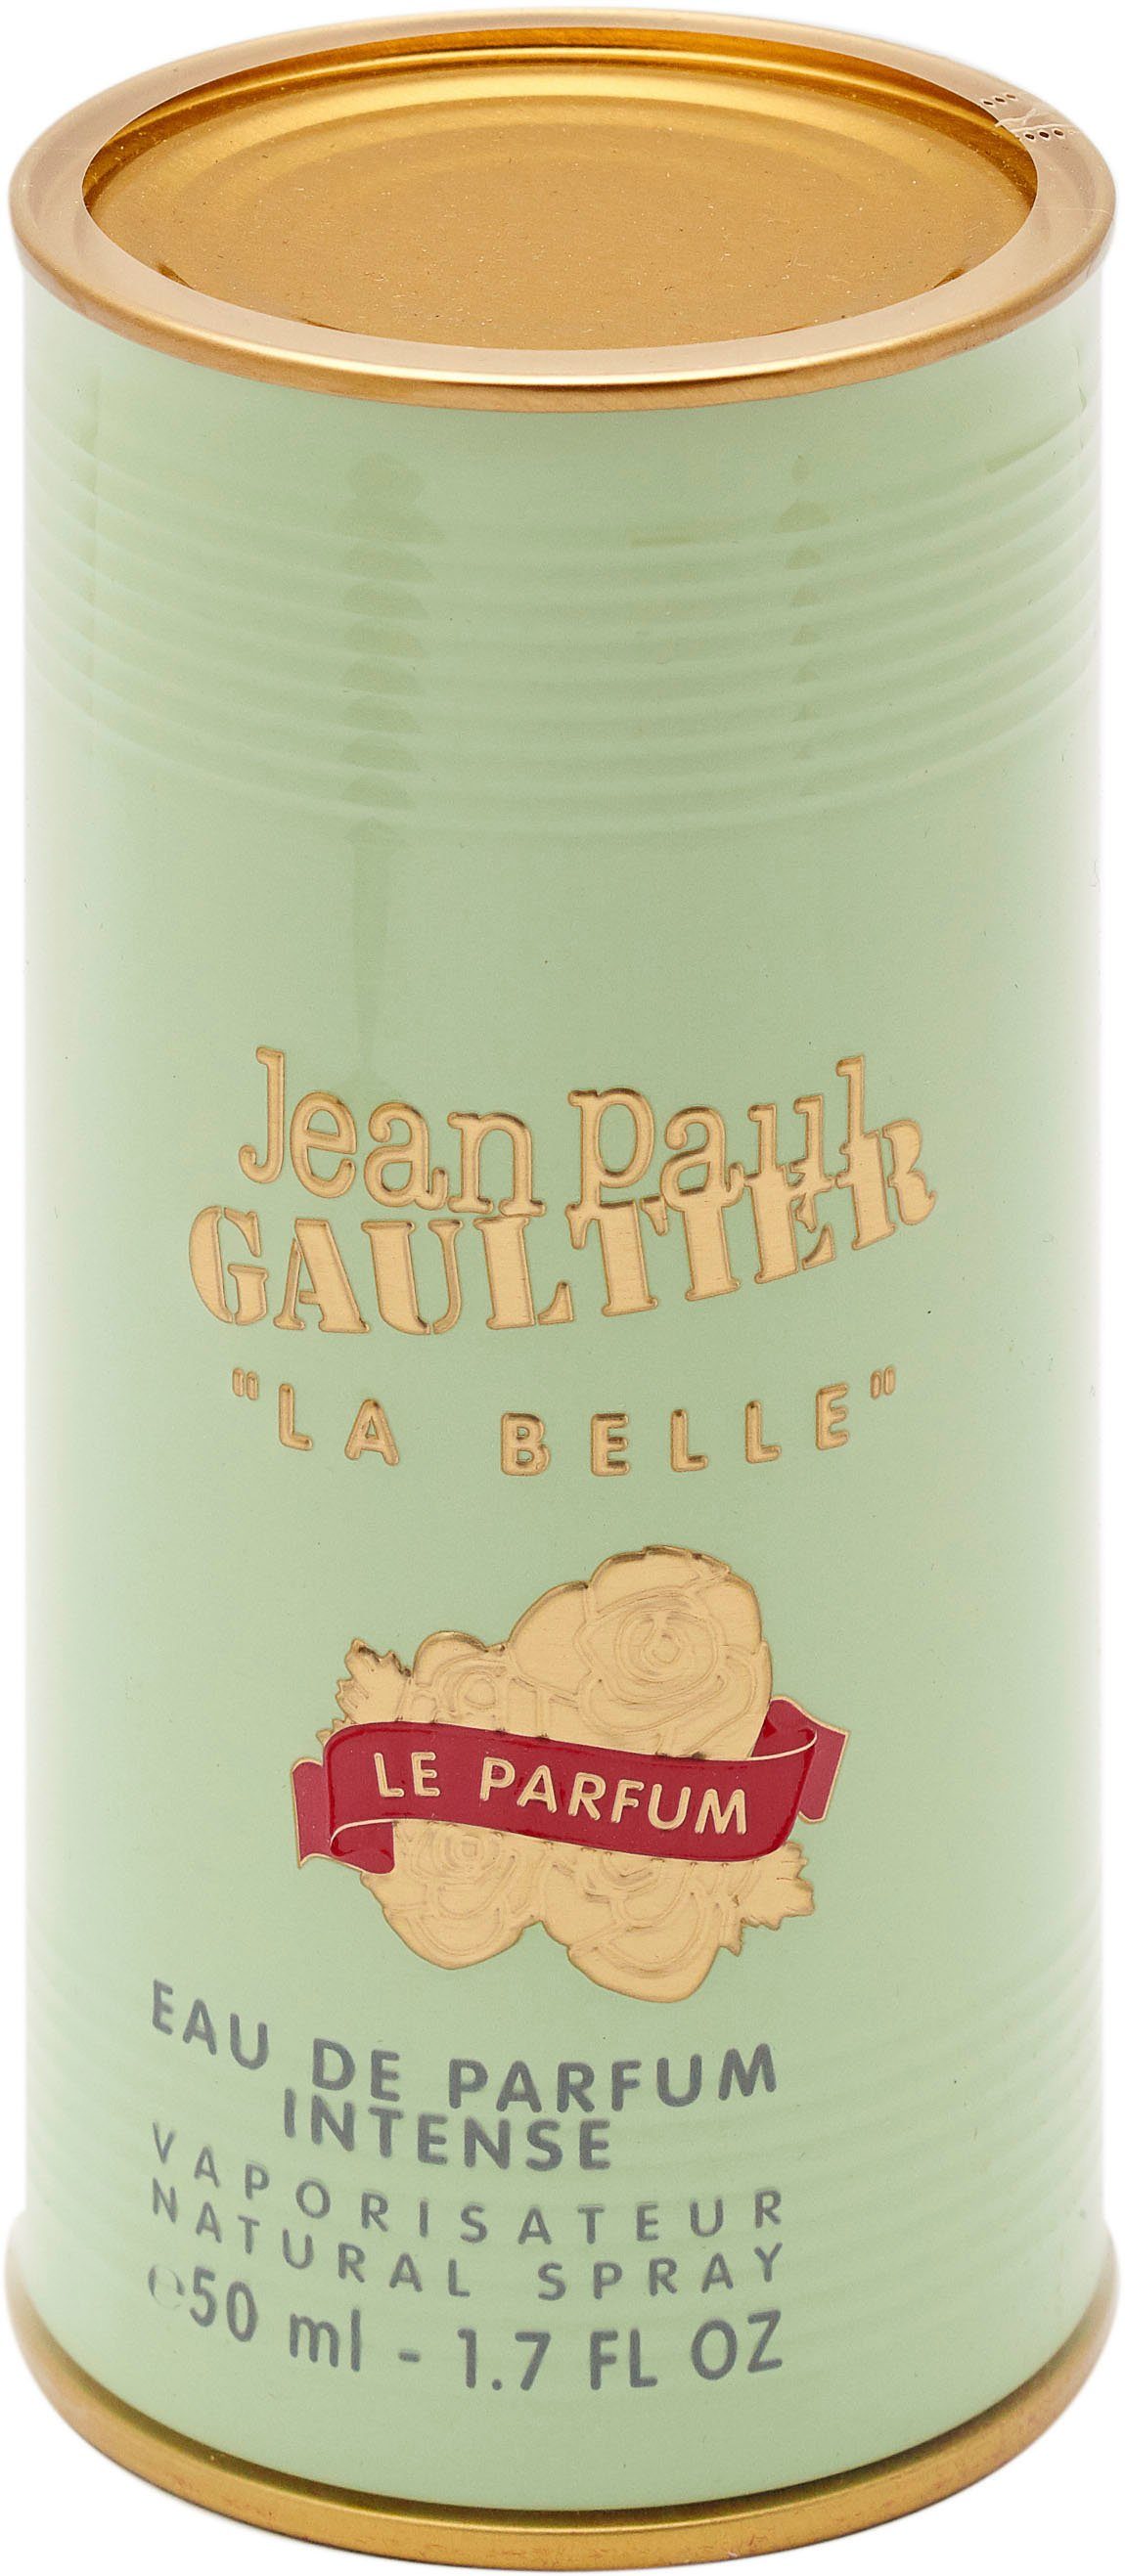 Belle Parfum GAULTIER JEAN PAUL La Parfum le Eau de